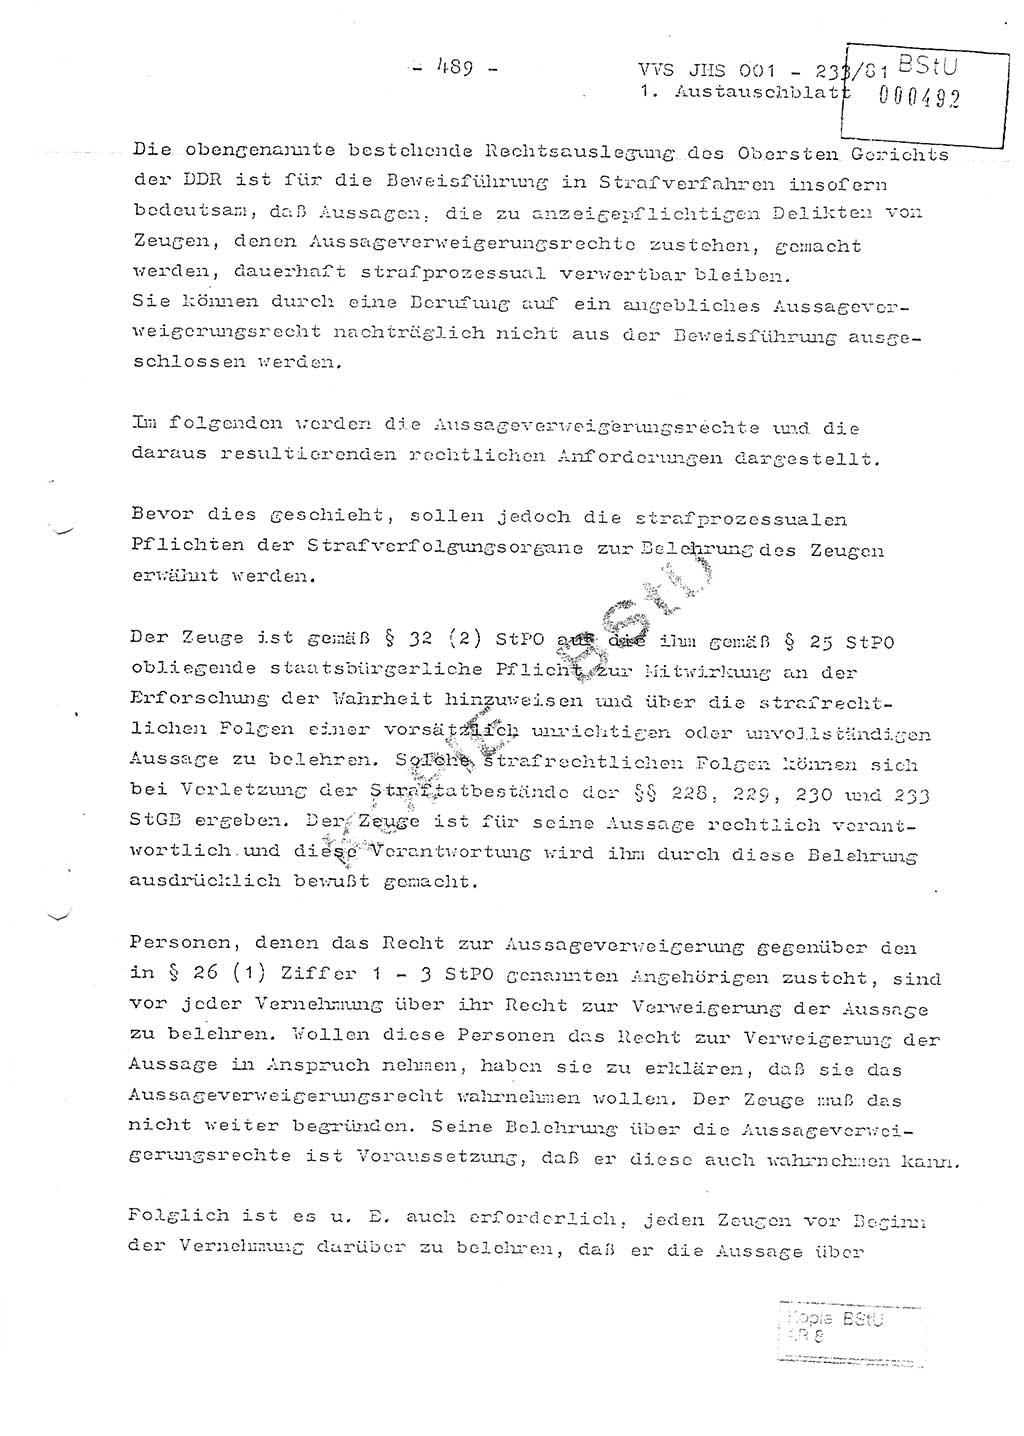 Dissertation Oberstleutnant Horst Zank (JHS), Oberstleutnant Dr. Karl-Heinz Knoblauch (JHS), Oberstleutnant Gustav-Adolf Kowalewski (HA Ⅸ), Oberstleutnant Wolfgang Plötner (HA Ⅸ), Ministerium für Staatssicherheit (MfS) [Deutsche Demokratische Republik (DDR)], Juristische Hochschule (JHS), Vertrauliche Verschlußsache (VVS) o001-233/81, Potsdam 1981, Blatt 489 (Diss. MfS DDR JHS VVS o001-233/81 1981, Bl. 489)